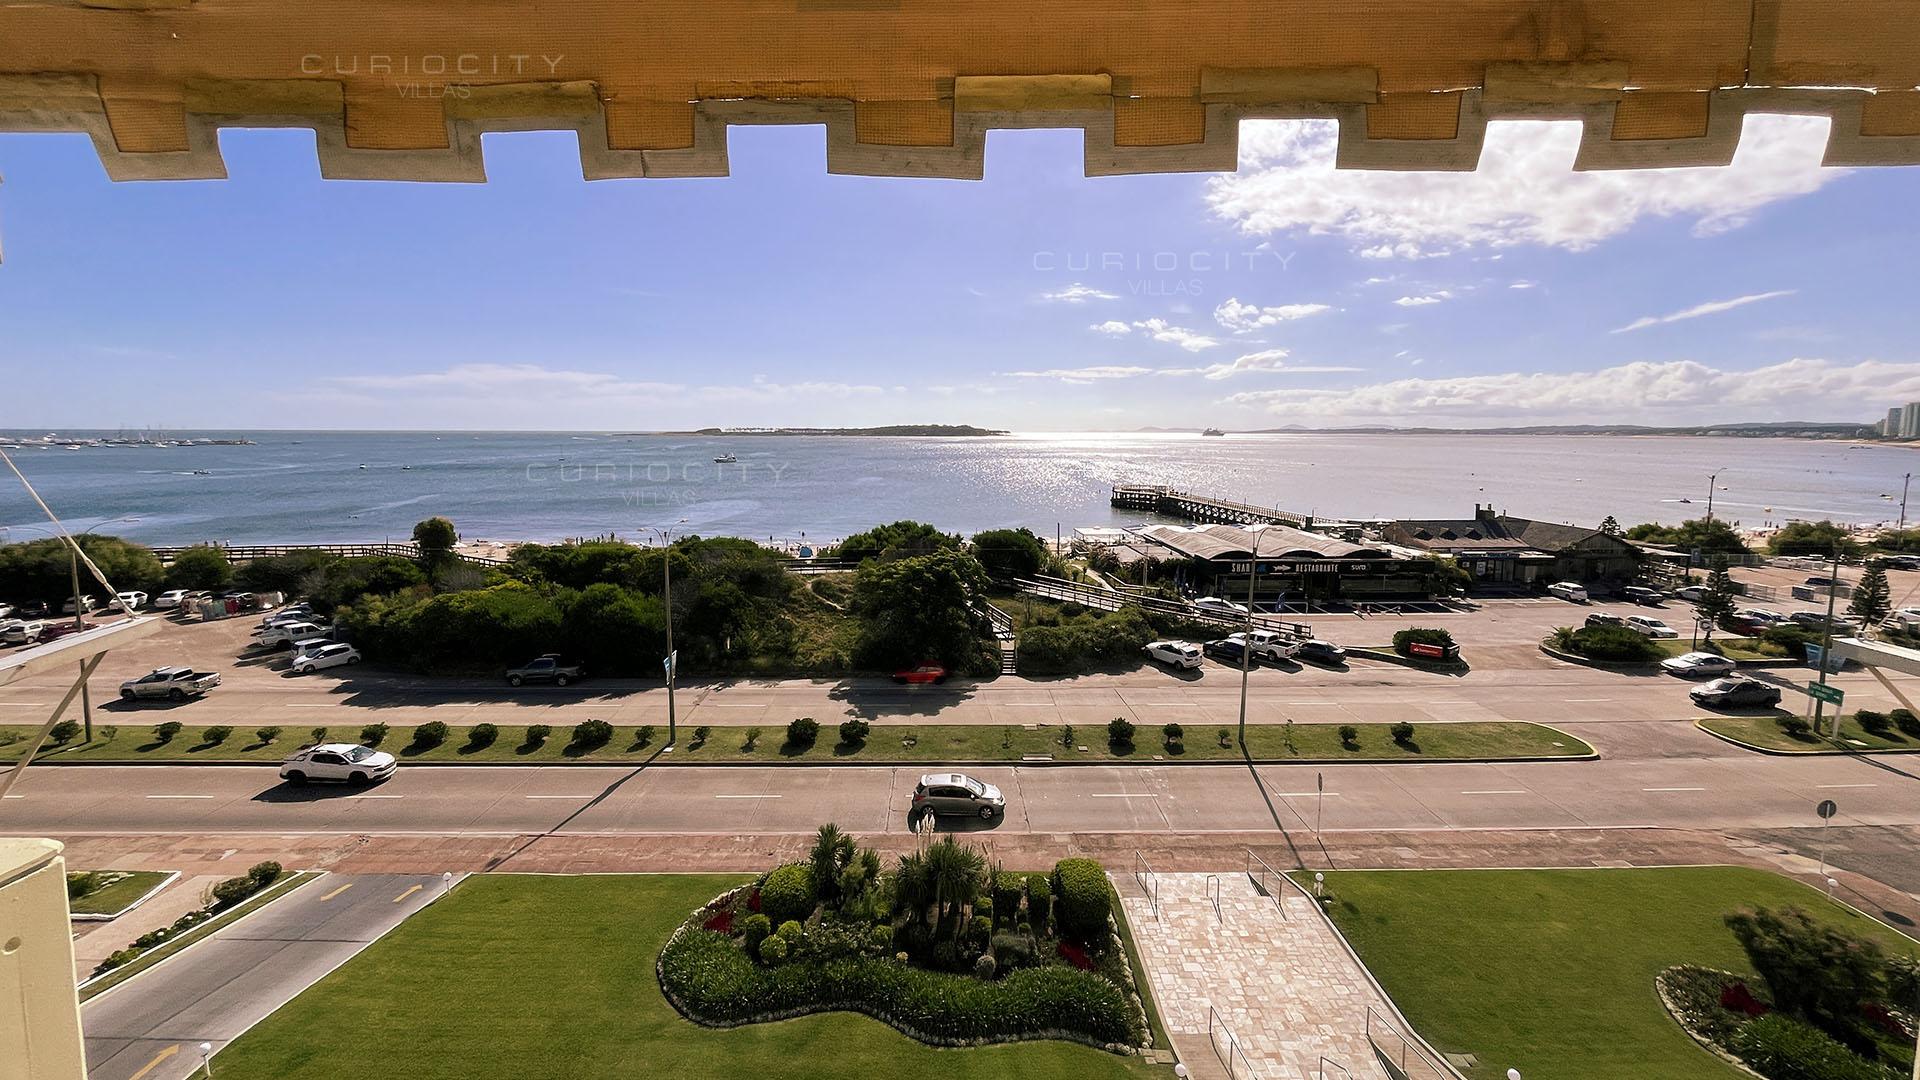 Ocean Marina Side Condo located in Punta del Este, Punta del Este, Uruguay, listed by Curiocity Villas.